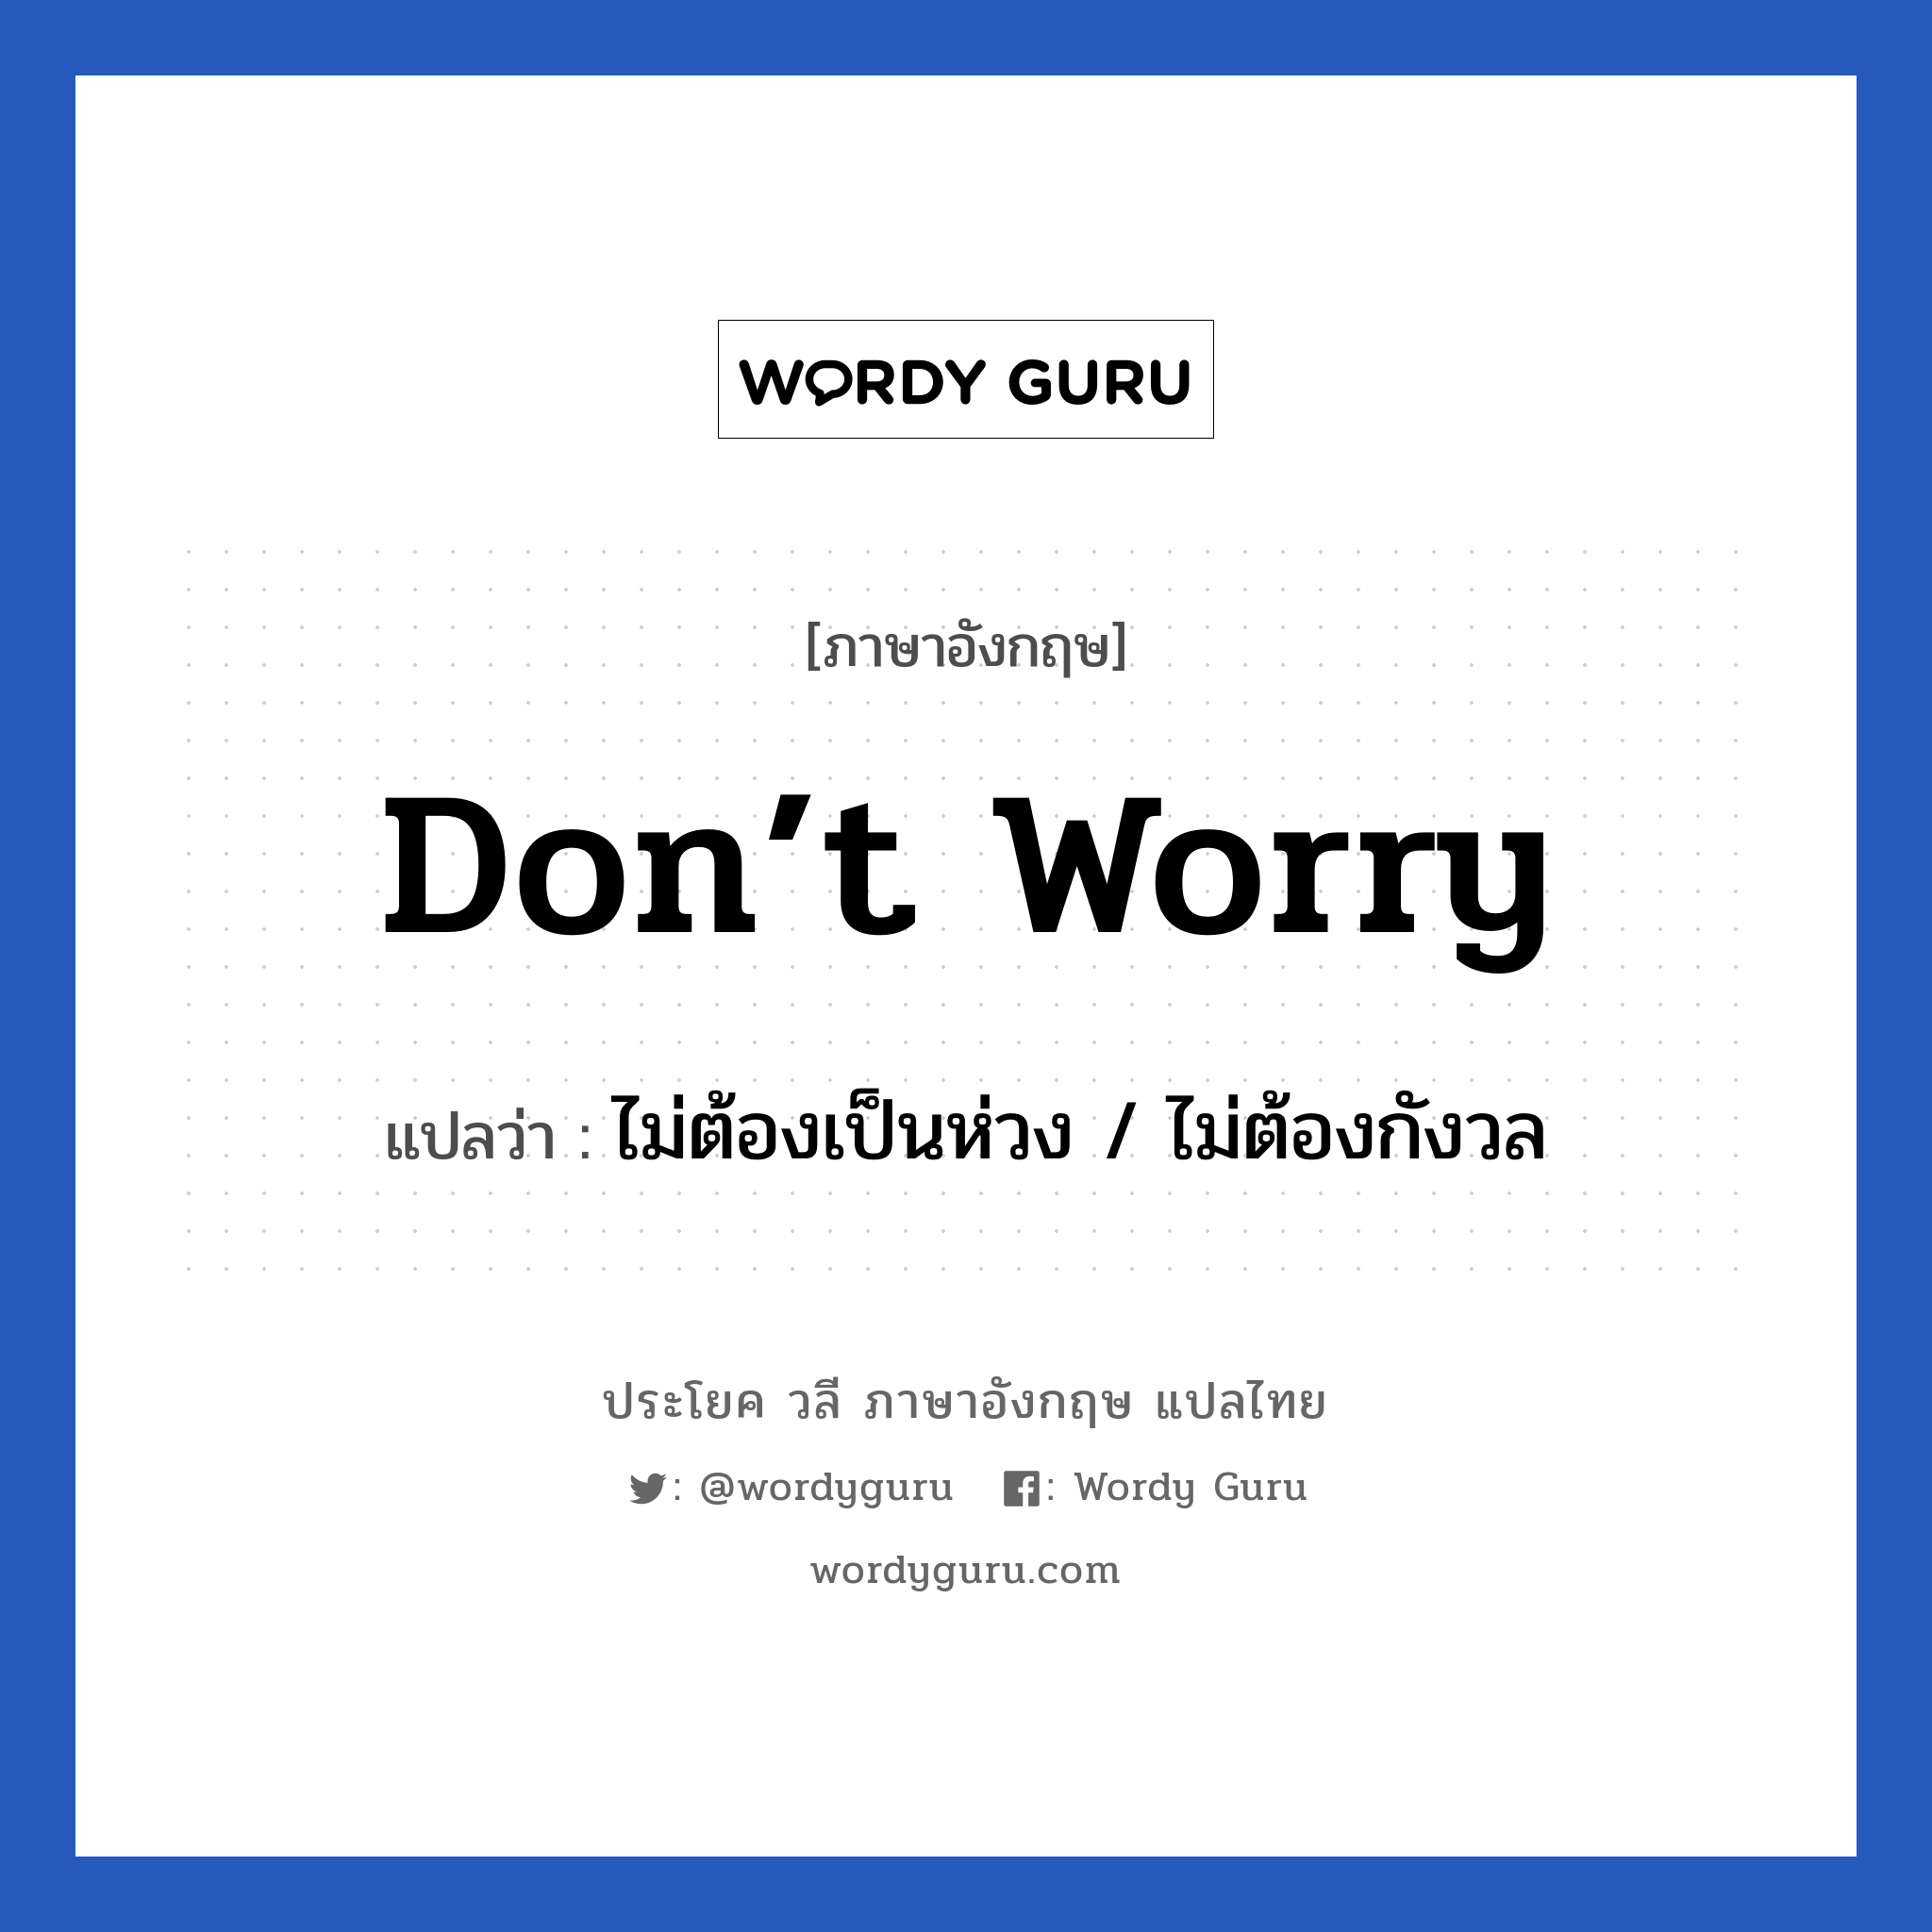 Don’t worry แปลว่า?, วลีภาษาอังกฤษ Don’t worry แปลว่า ไม่ต้องเป็นห่วง / ไม่ต้องกังวล